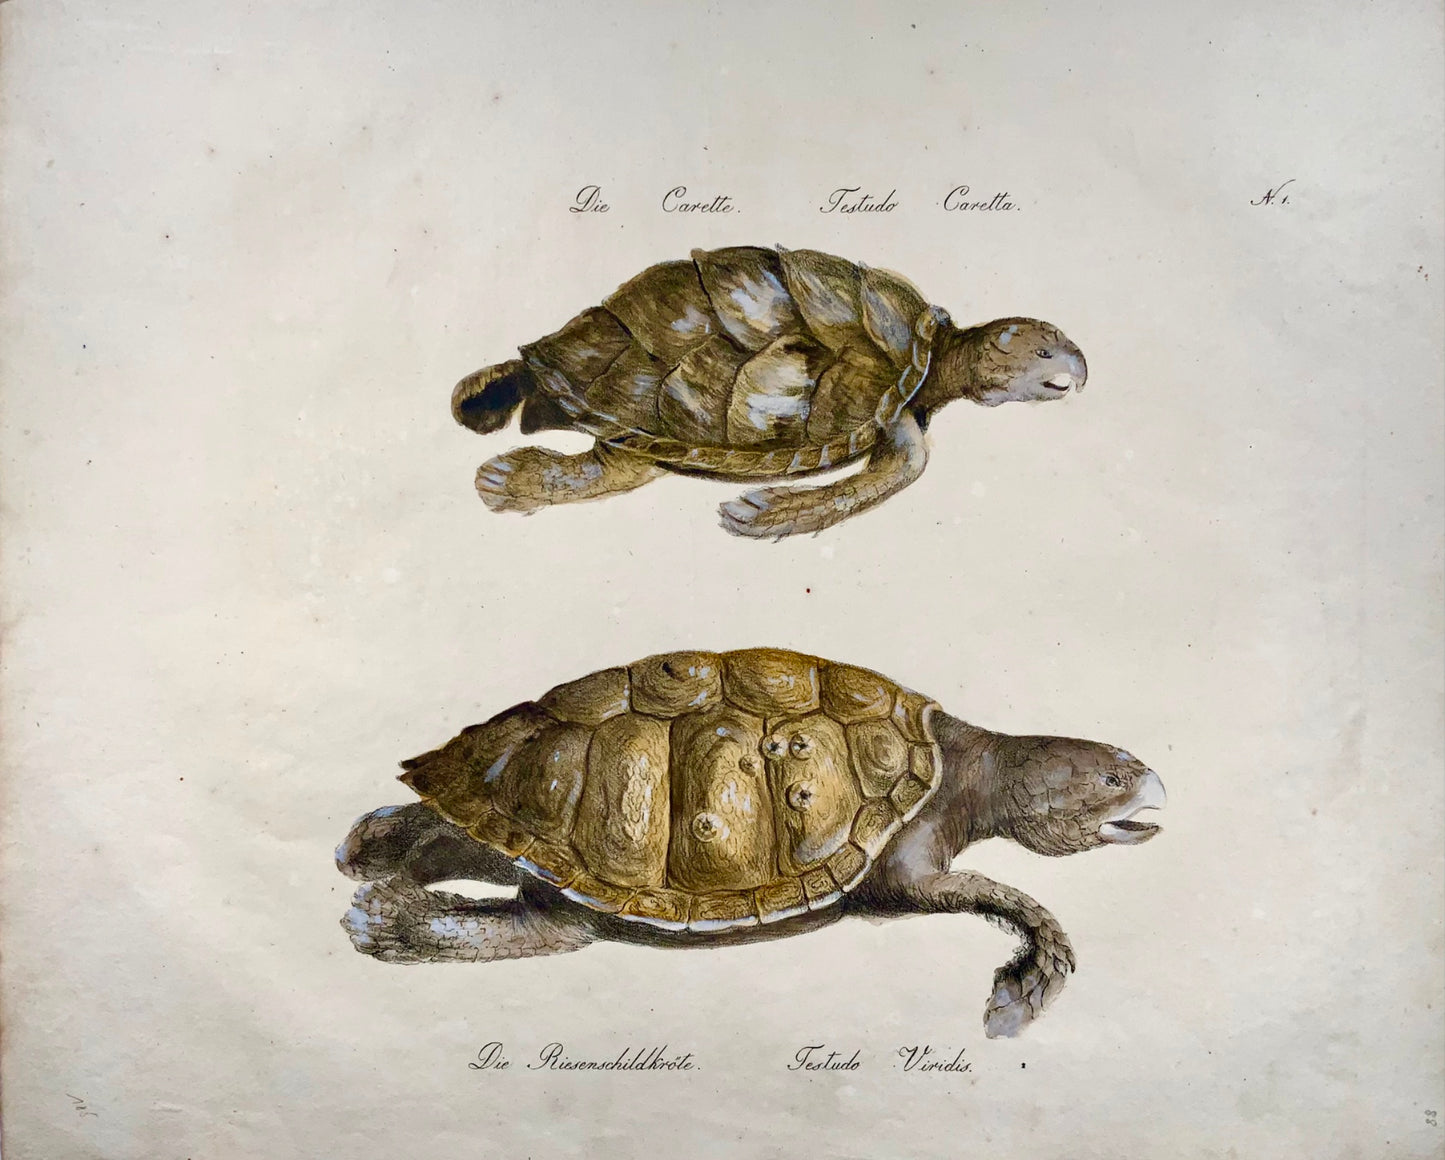 1816 Tortues, Brodtmann, Imp. folio 42,5 cm, incunables de lithographie